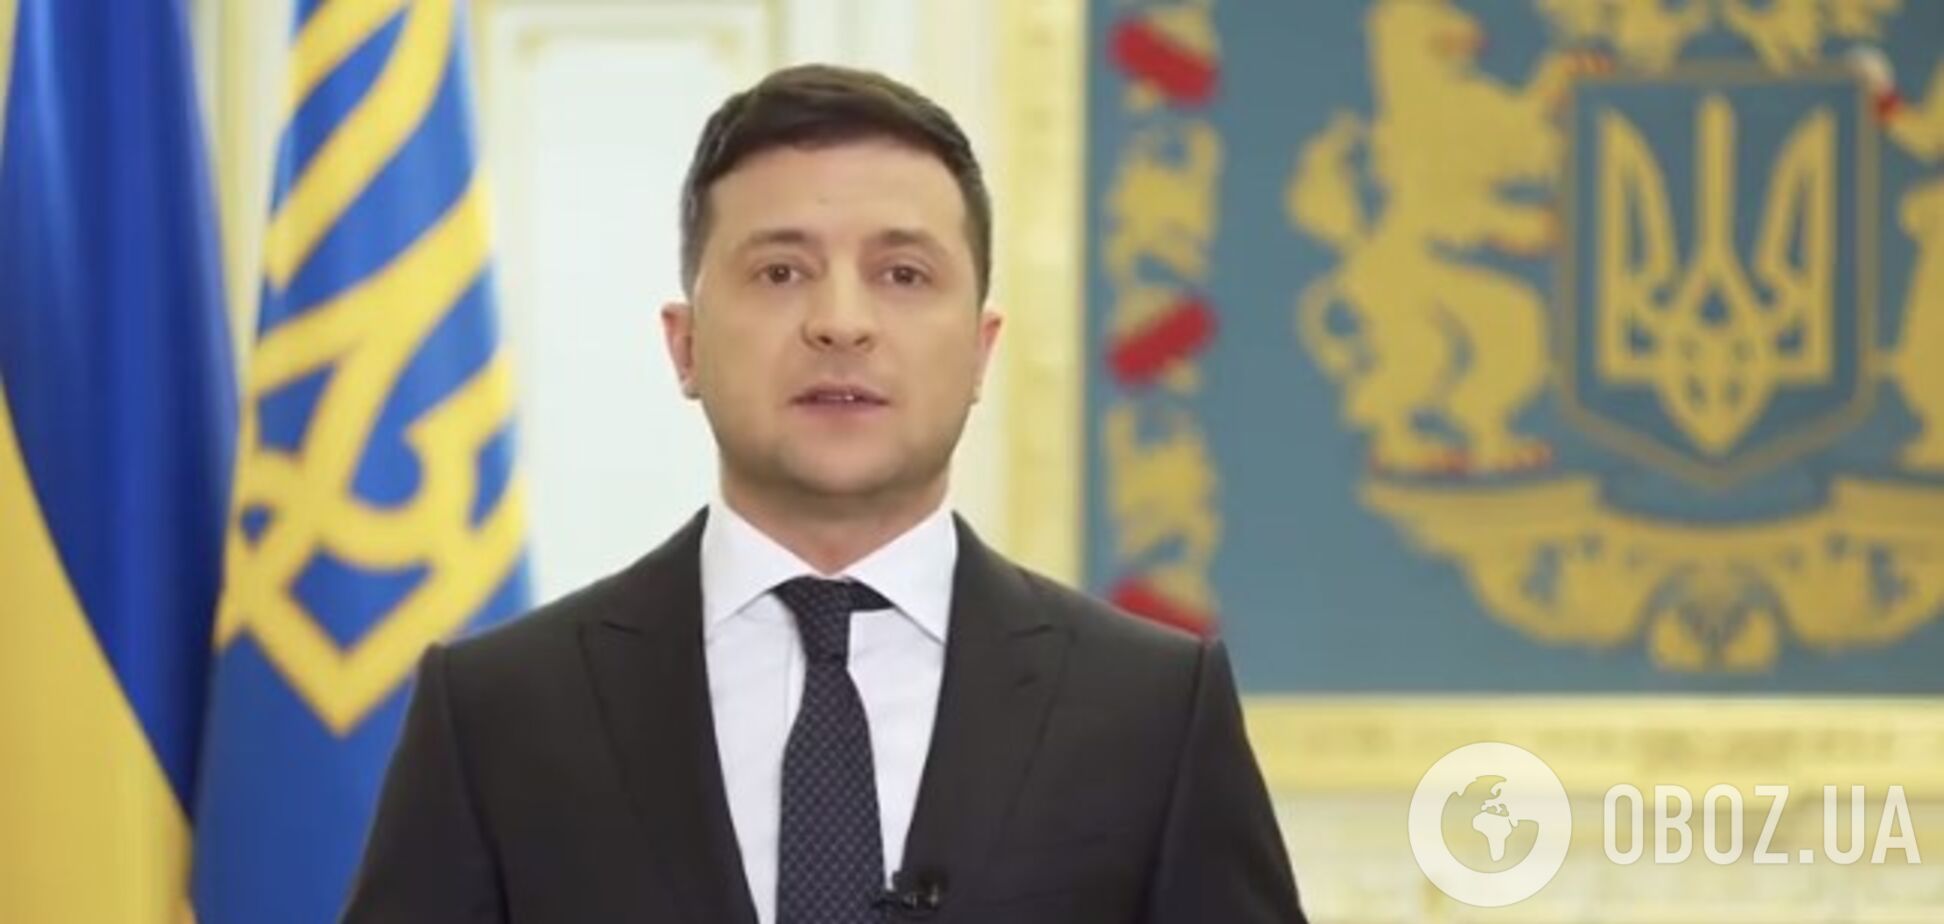 Зеленский обратился к украинцам: что сказал президент. Видео